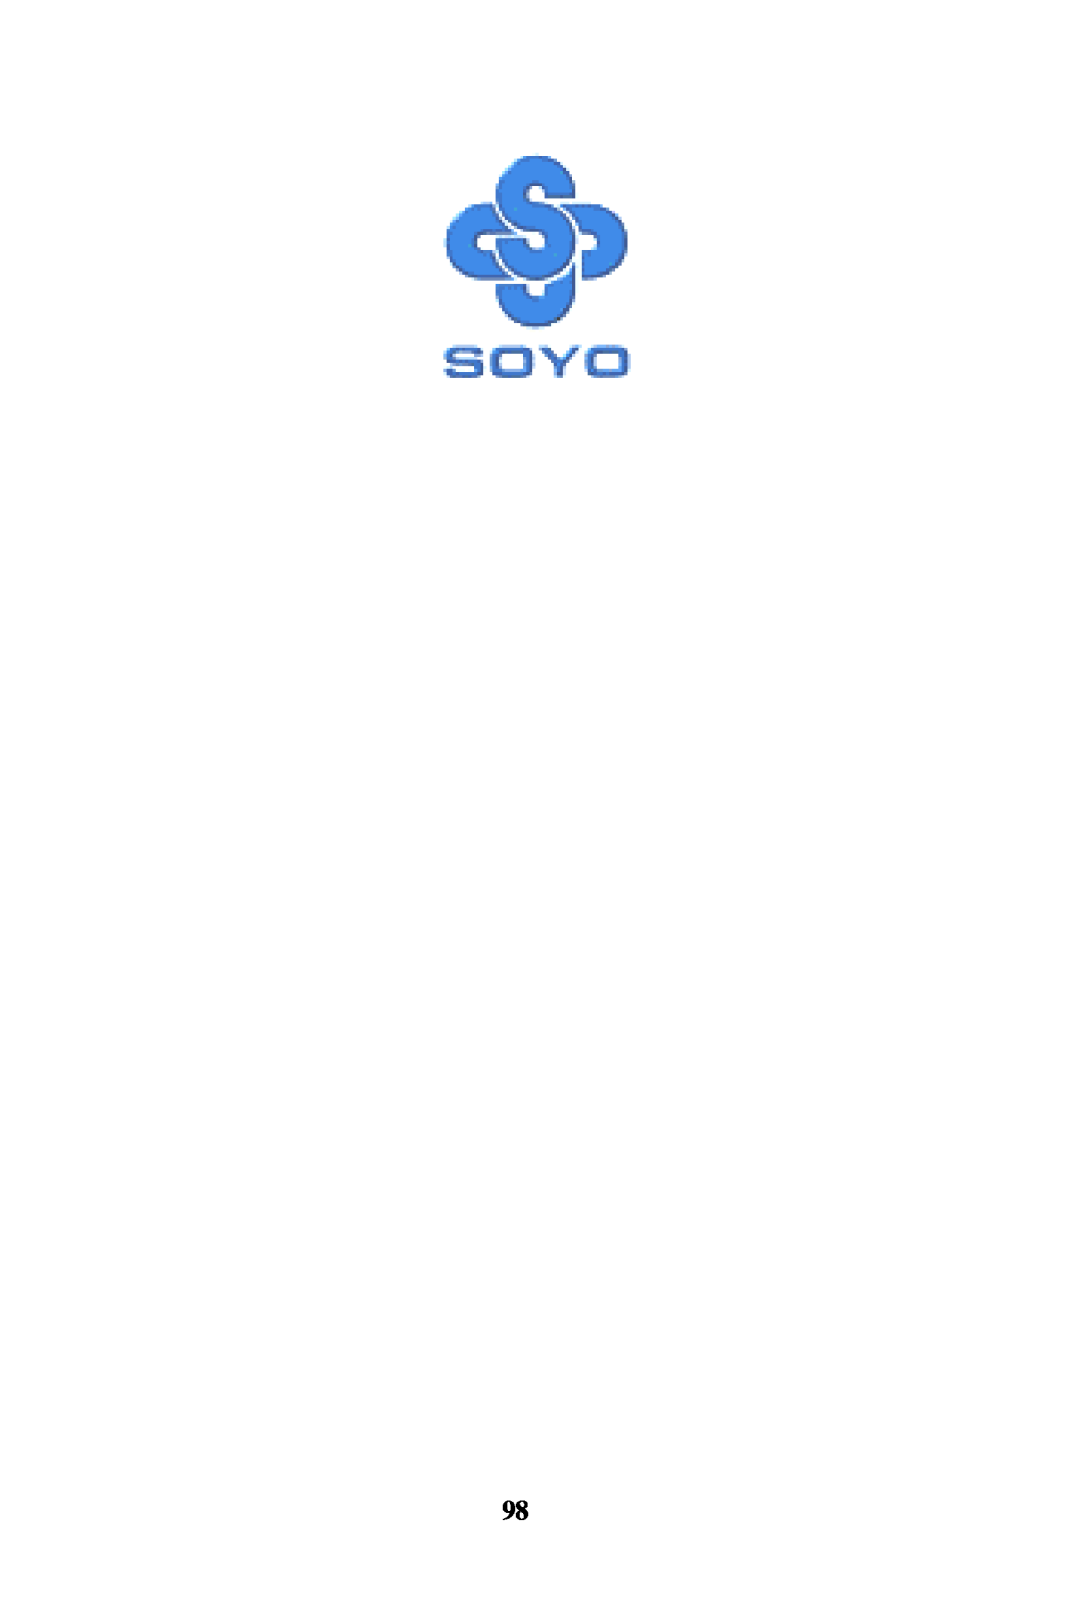 SOYO SY-7VCA user manual 